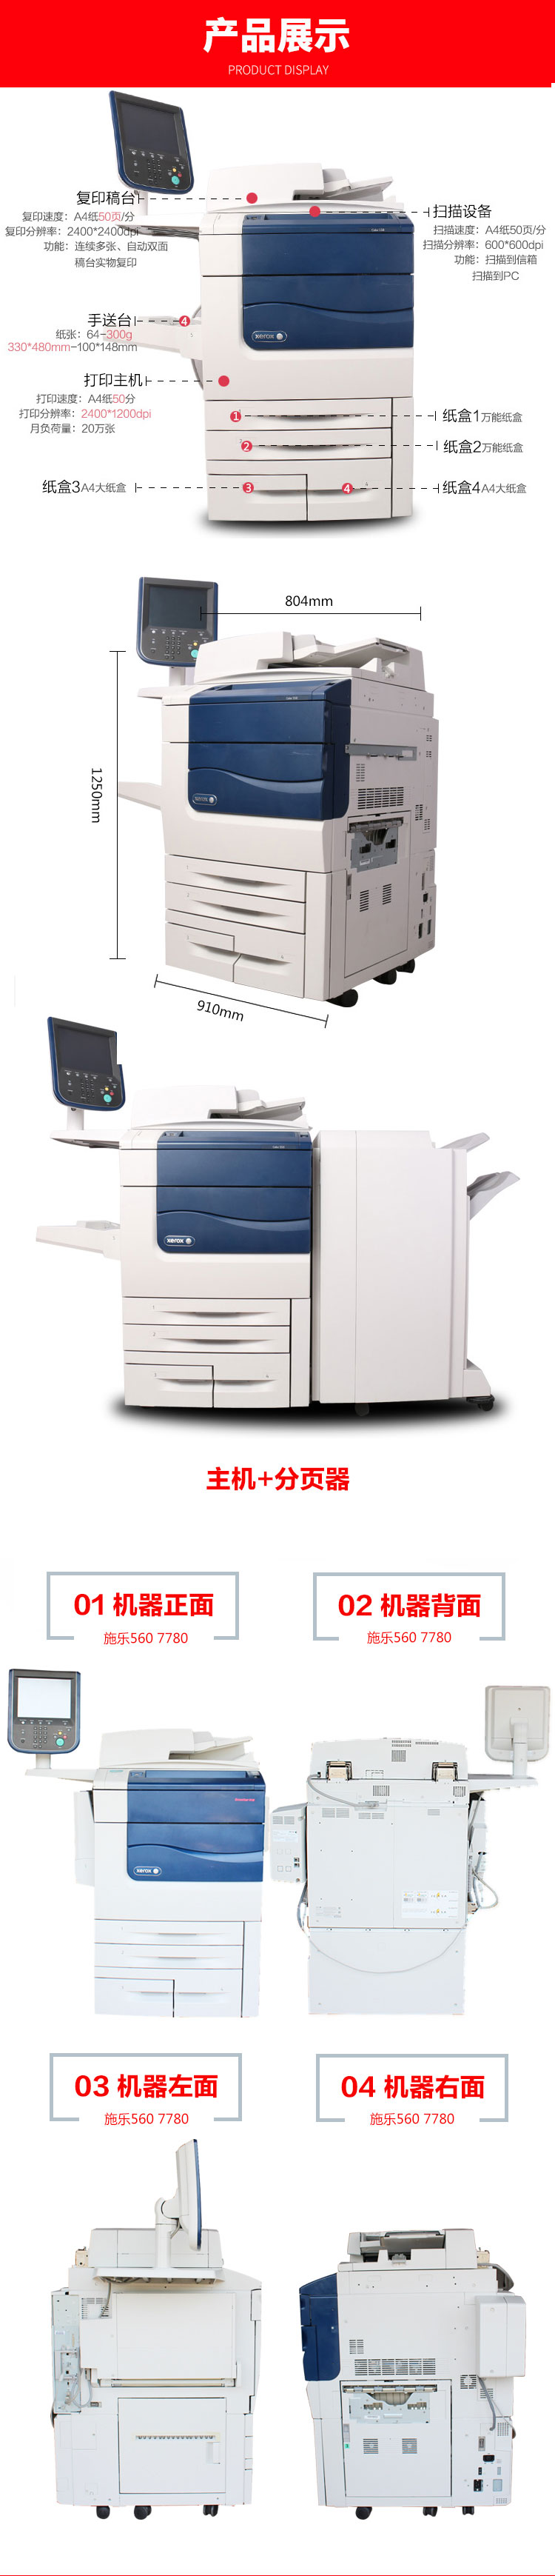 施乐560彩色高速数码复印机产品展示